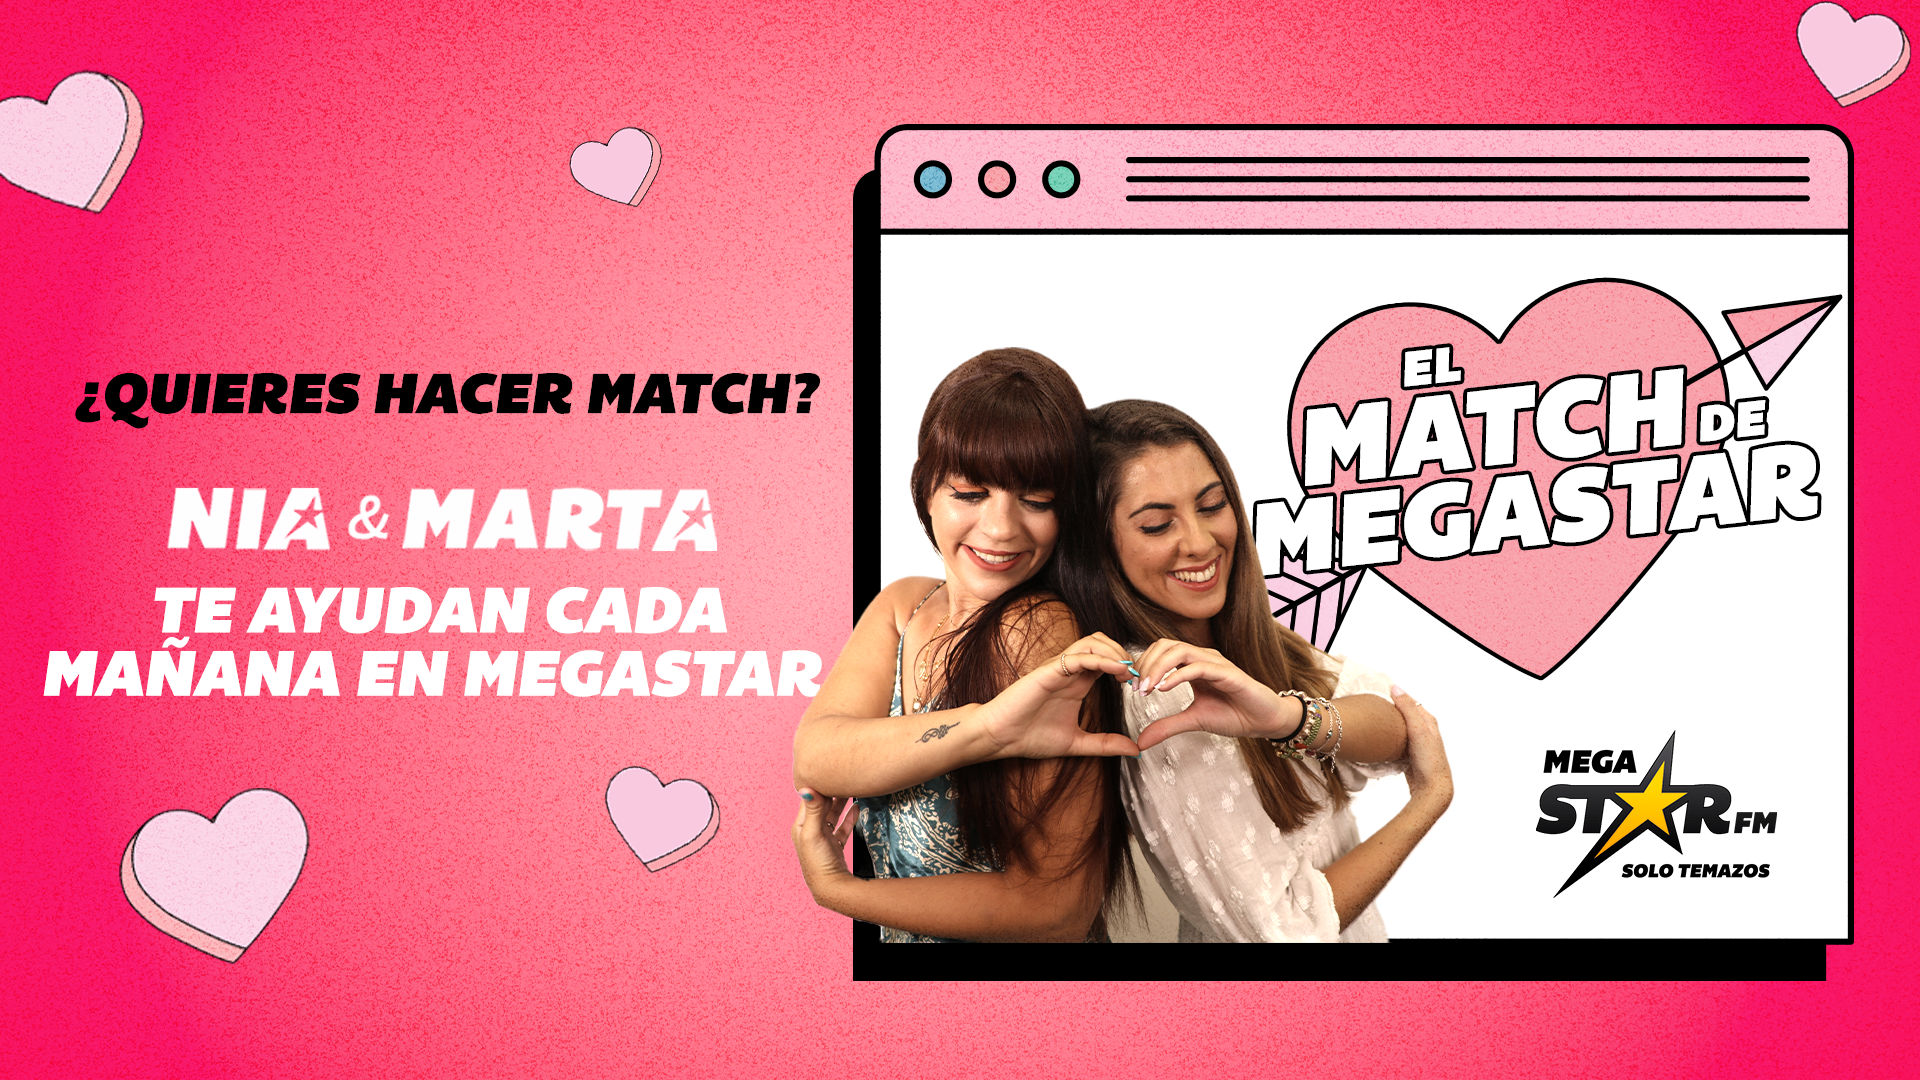 Tania y Claudio, la pareja protagonista de este lunes en 'El Match de MegaStar'